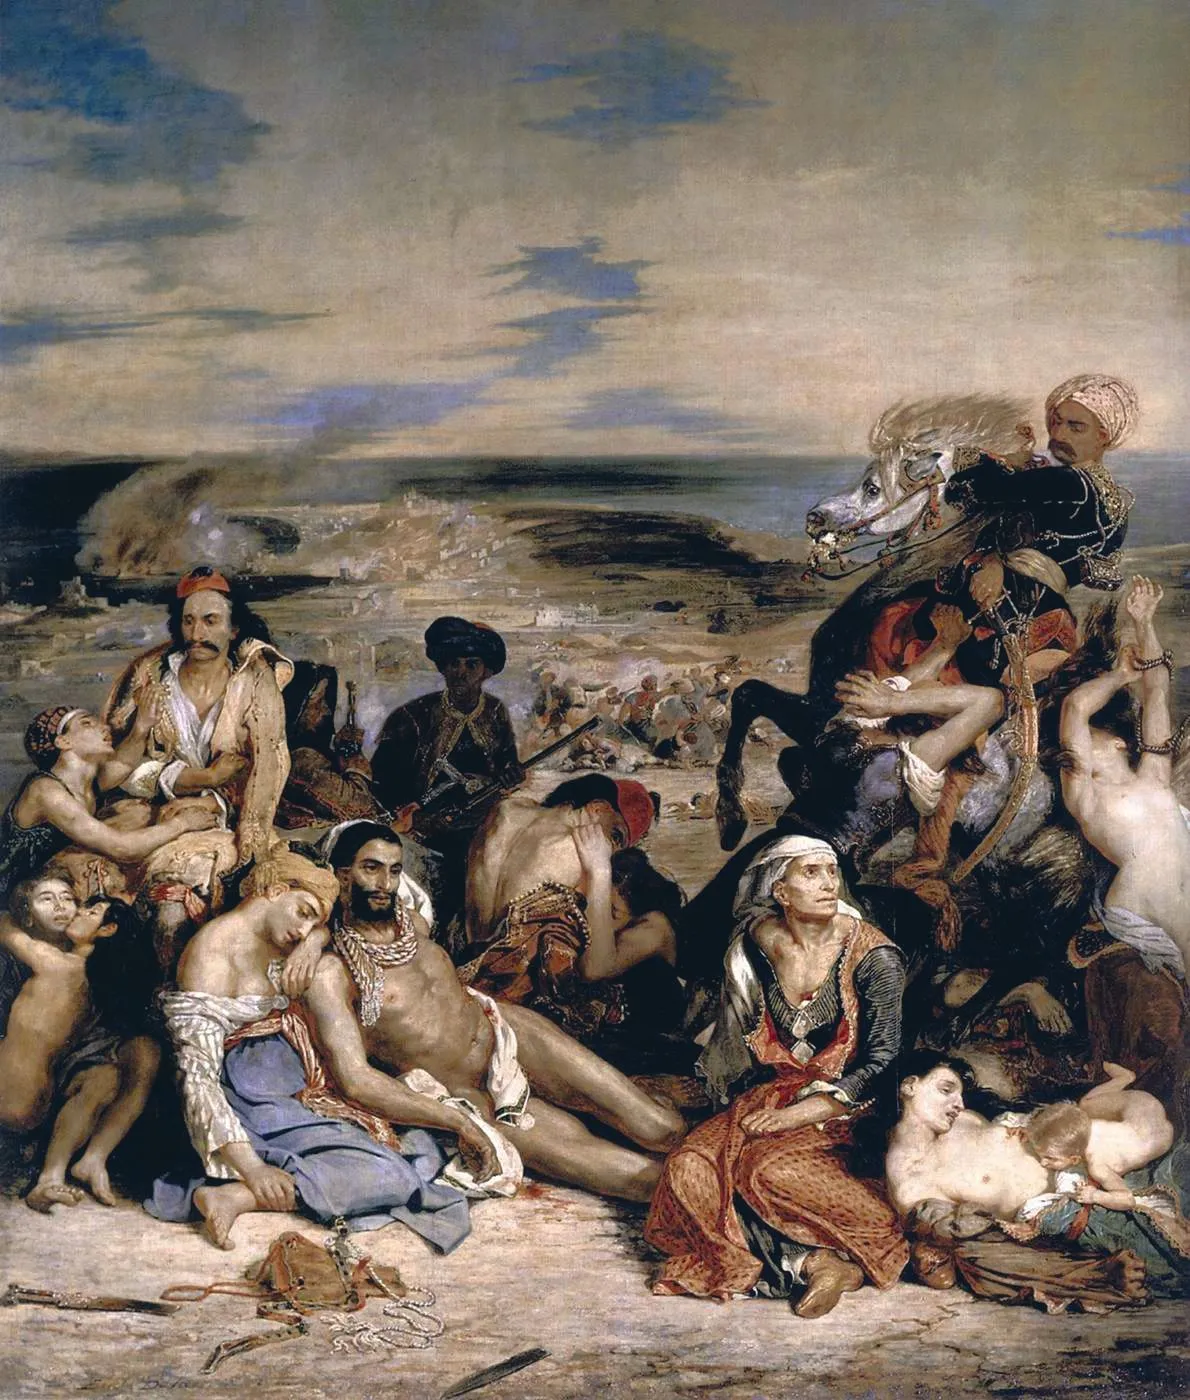 Eugène Delacroix, Scènes des
massacres de Scio, 1823 - 1824,
huile sur toile, 419 × 354 cm,
musée du Louvre, Paris.